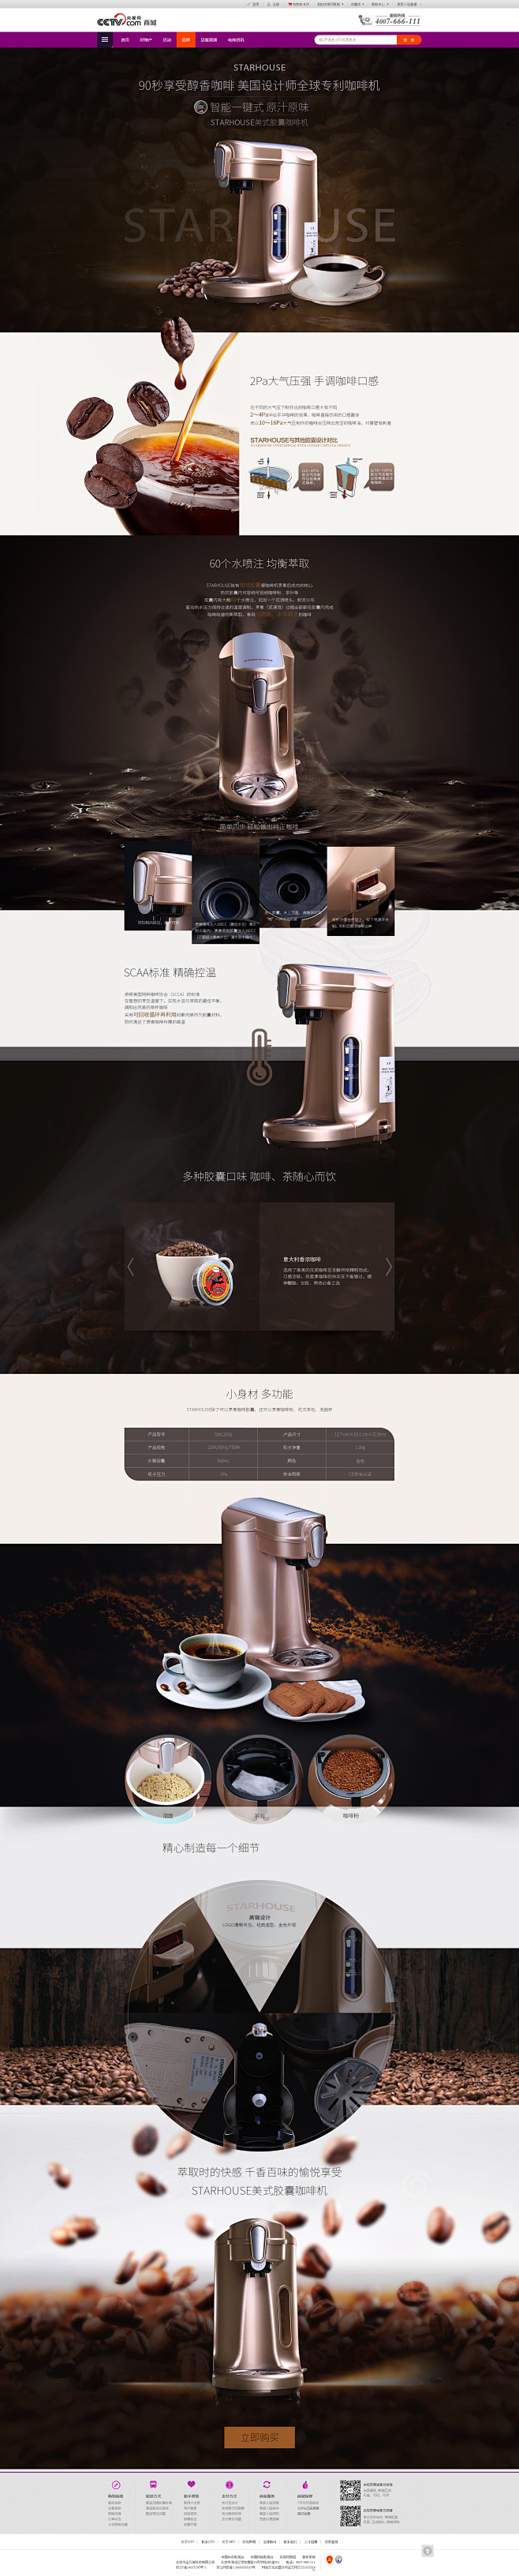 20150804-德维胶囊咖啡机 